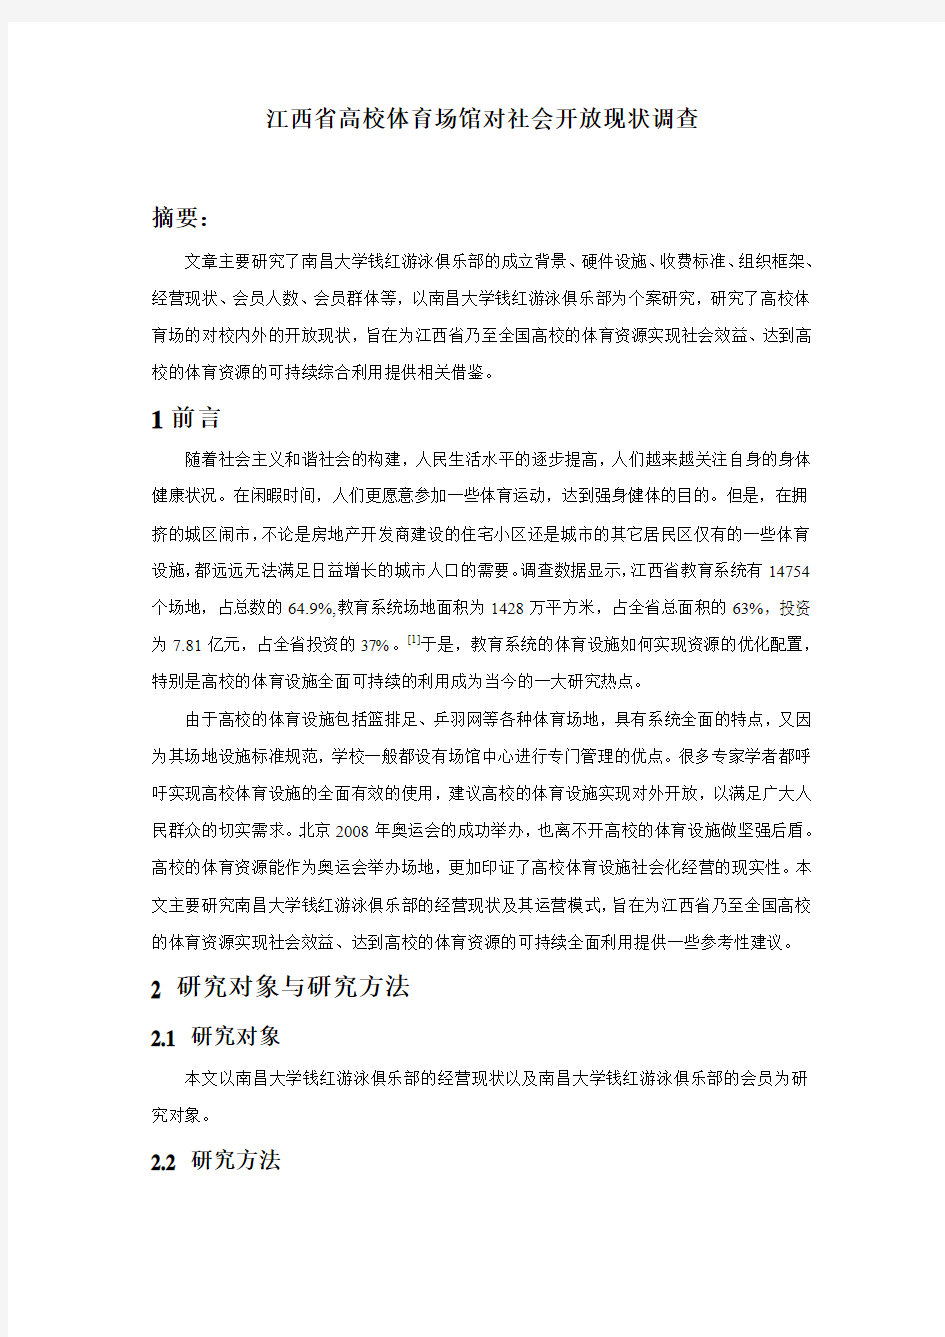 江西省高校体育场馆对社会开放现状调查